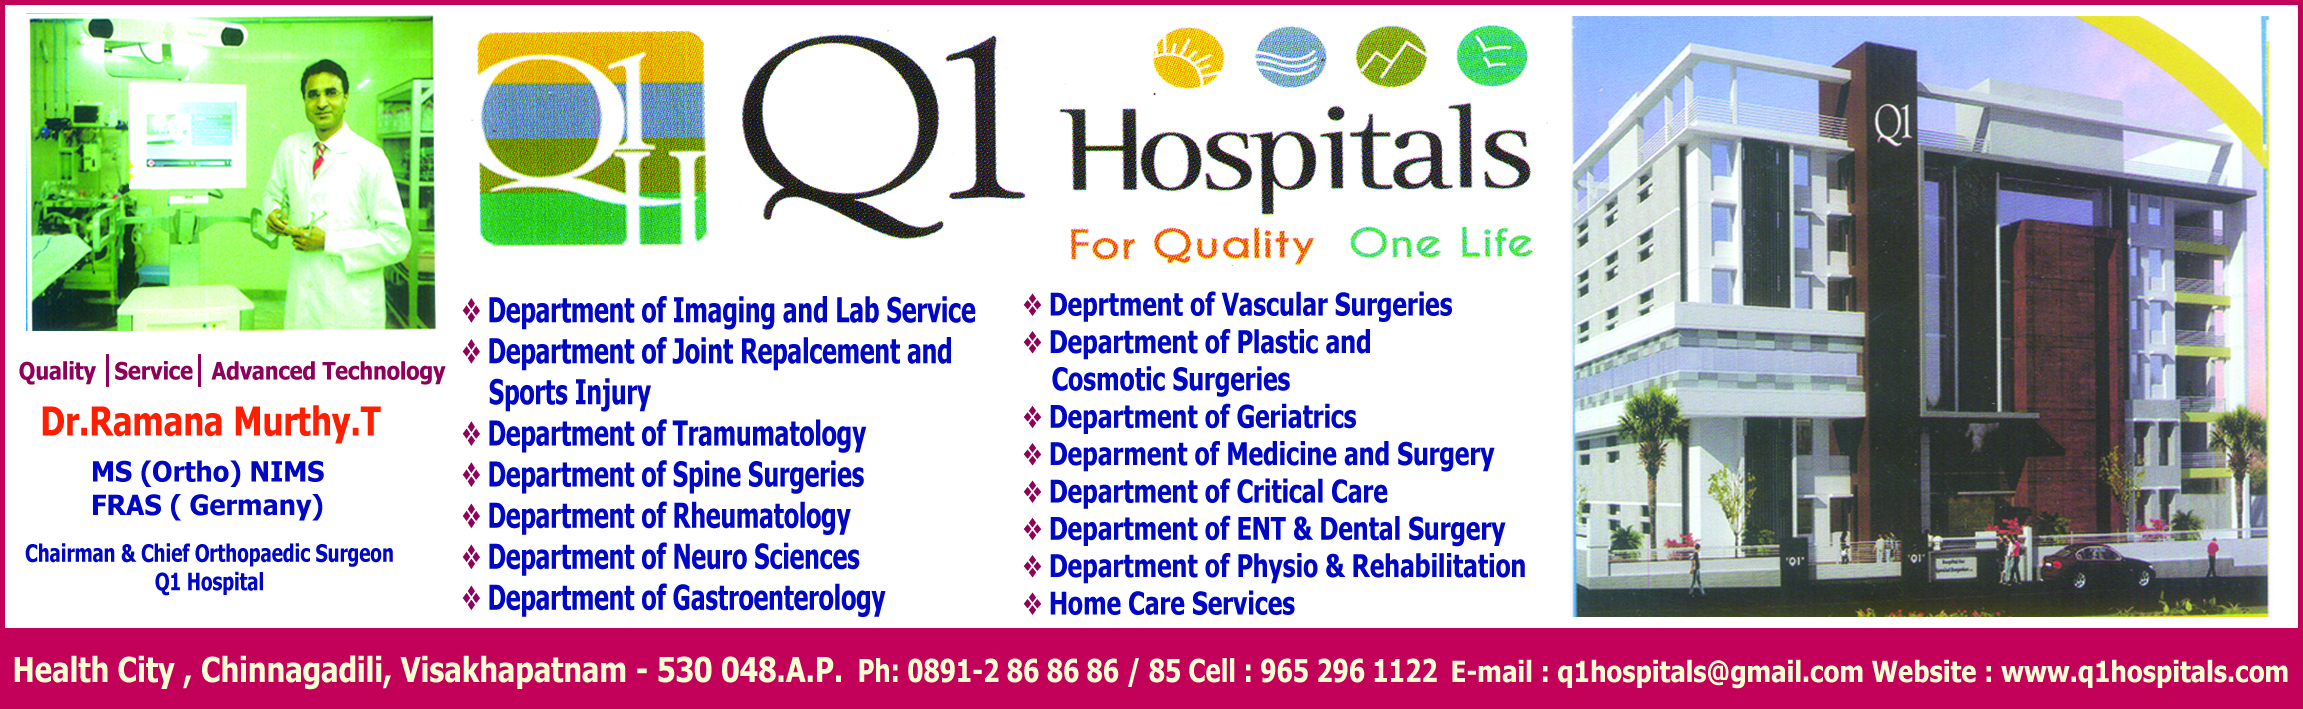 Q1hospitals 